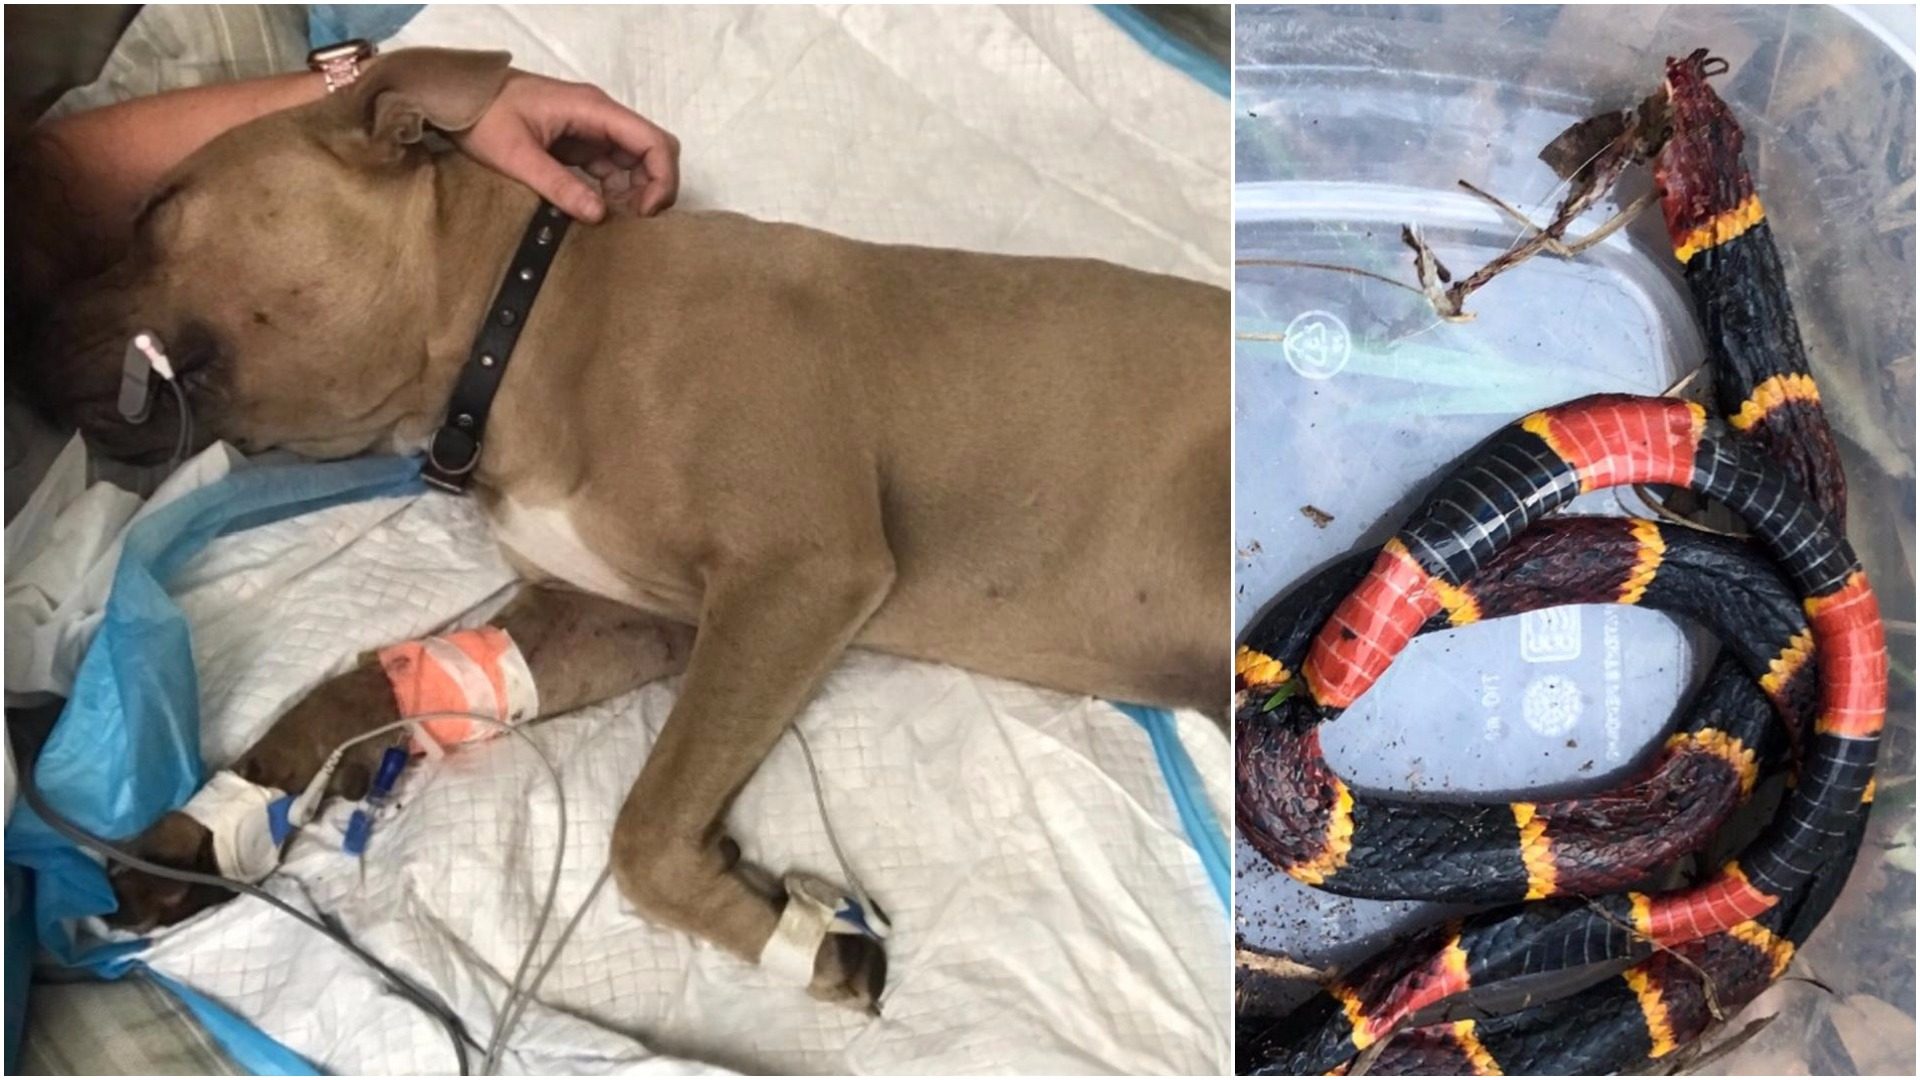 Hrabri pas je umro spašavajući dijete